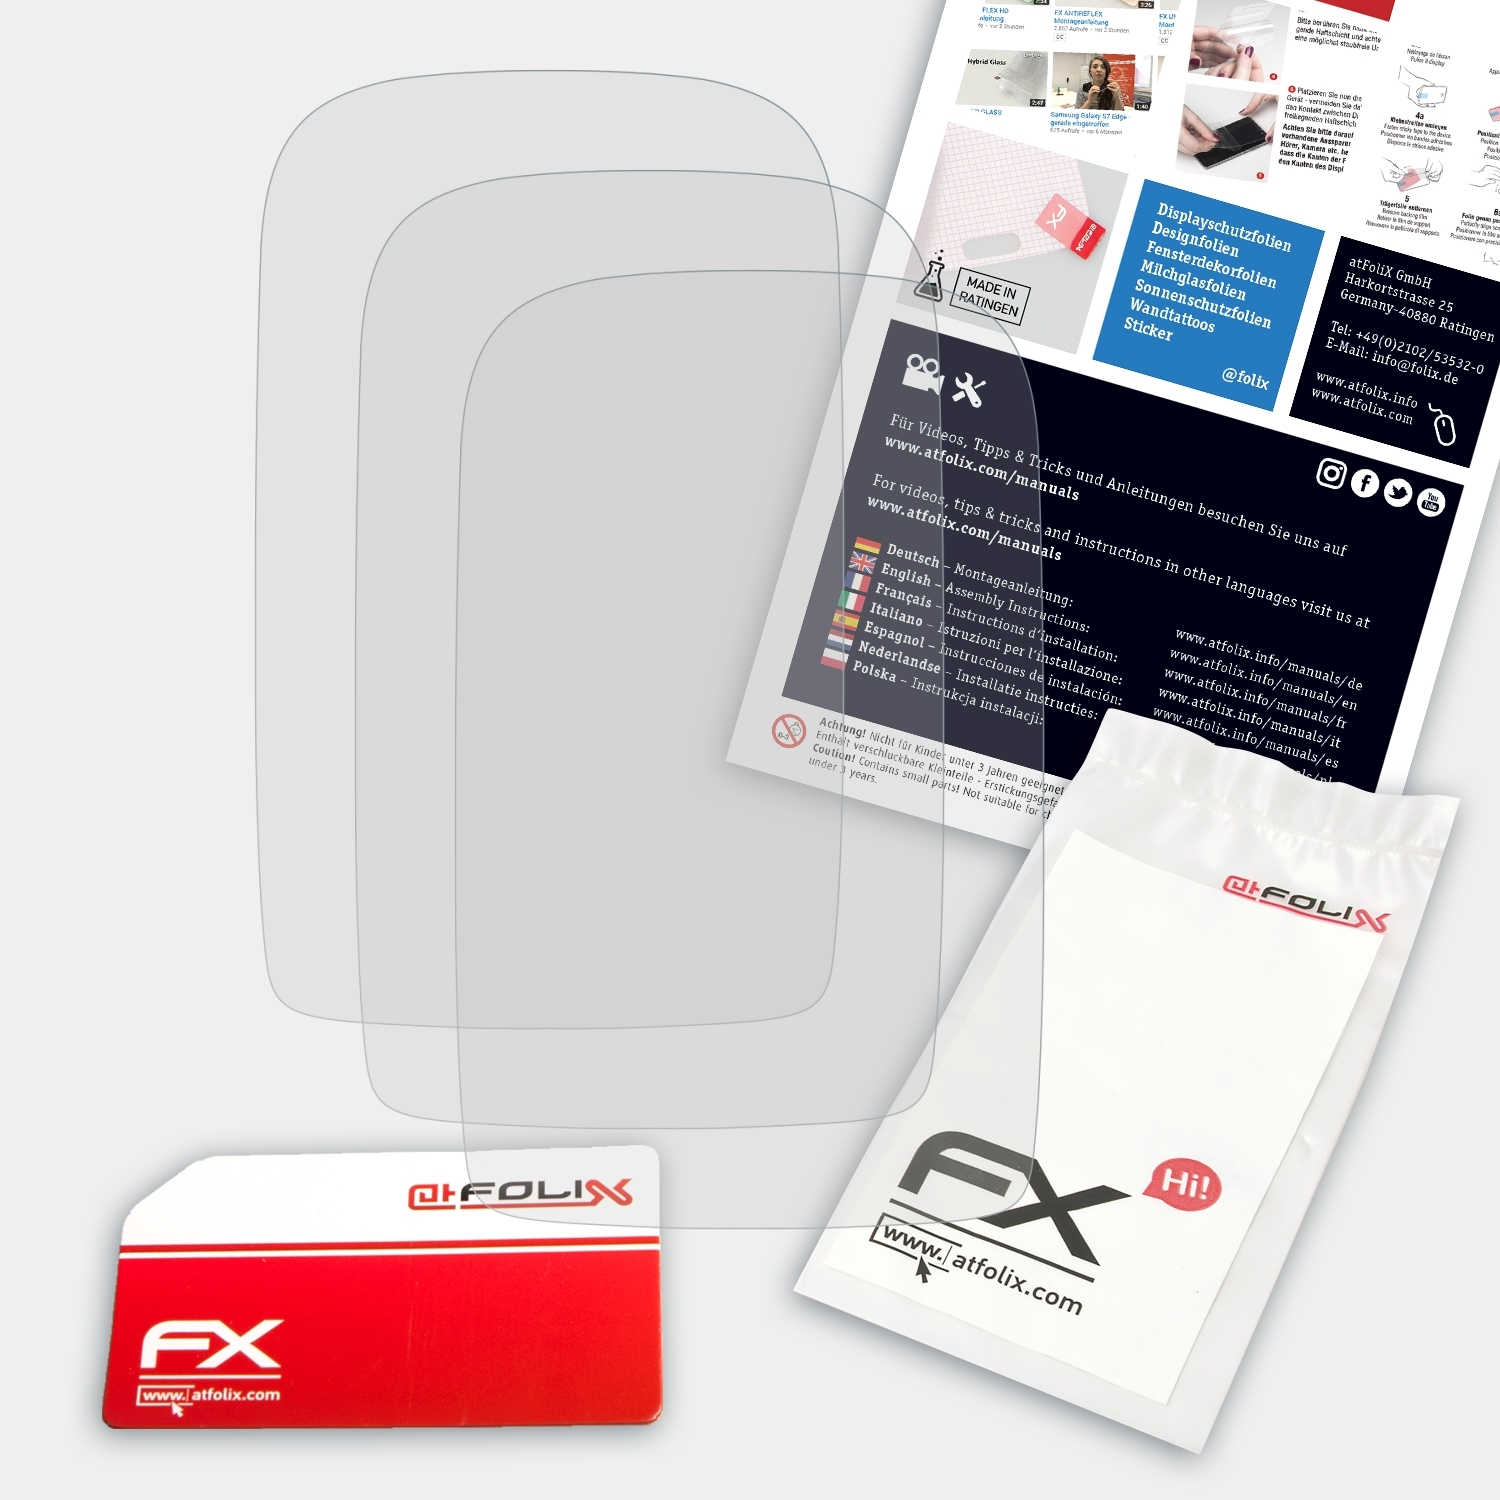 ATFOLIX FX-Antireflex Blaupunkt Displayschutz(für 3x MotoPilot)